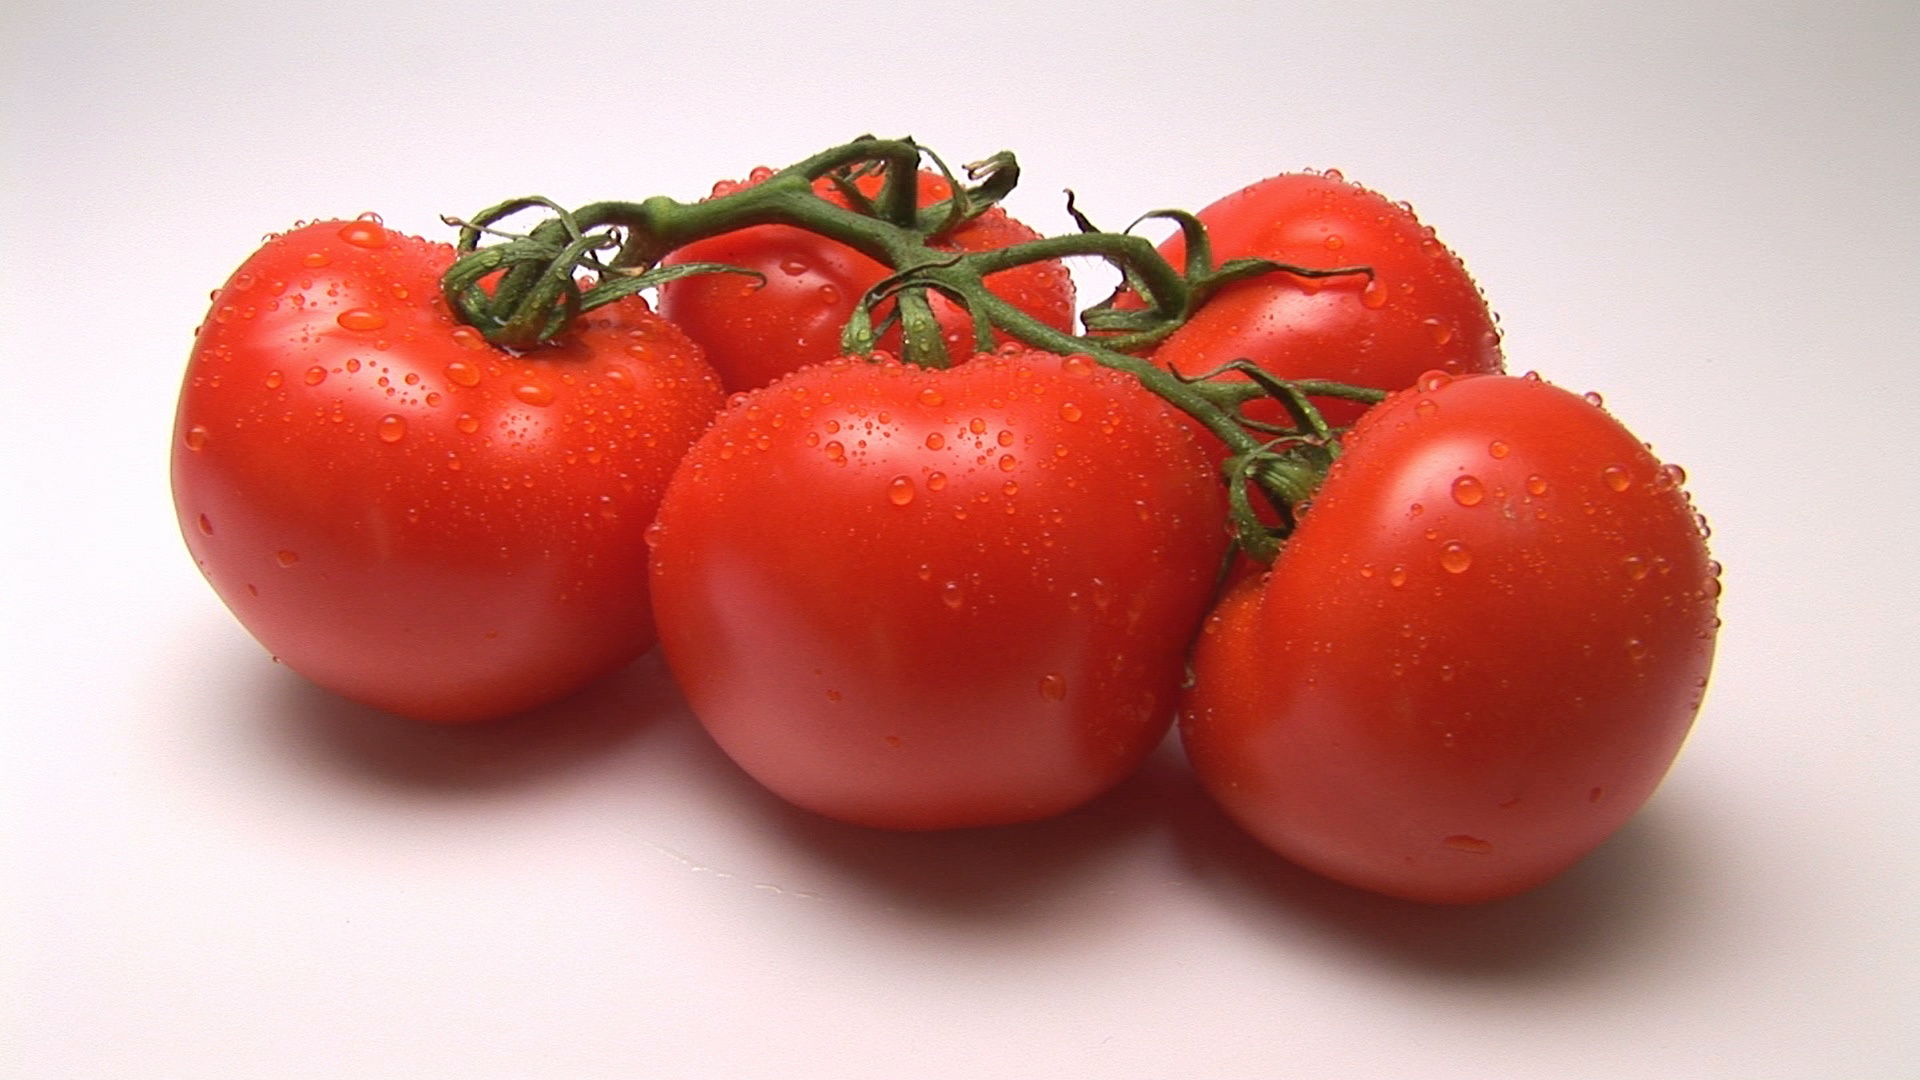 西红柿视频素材